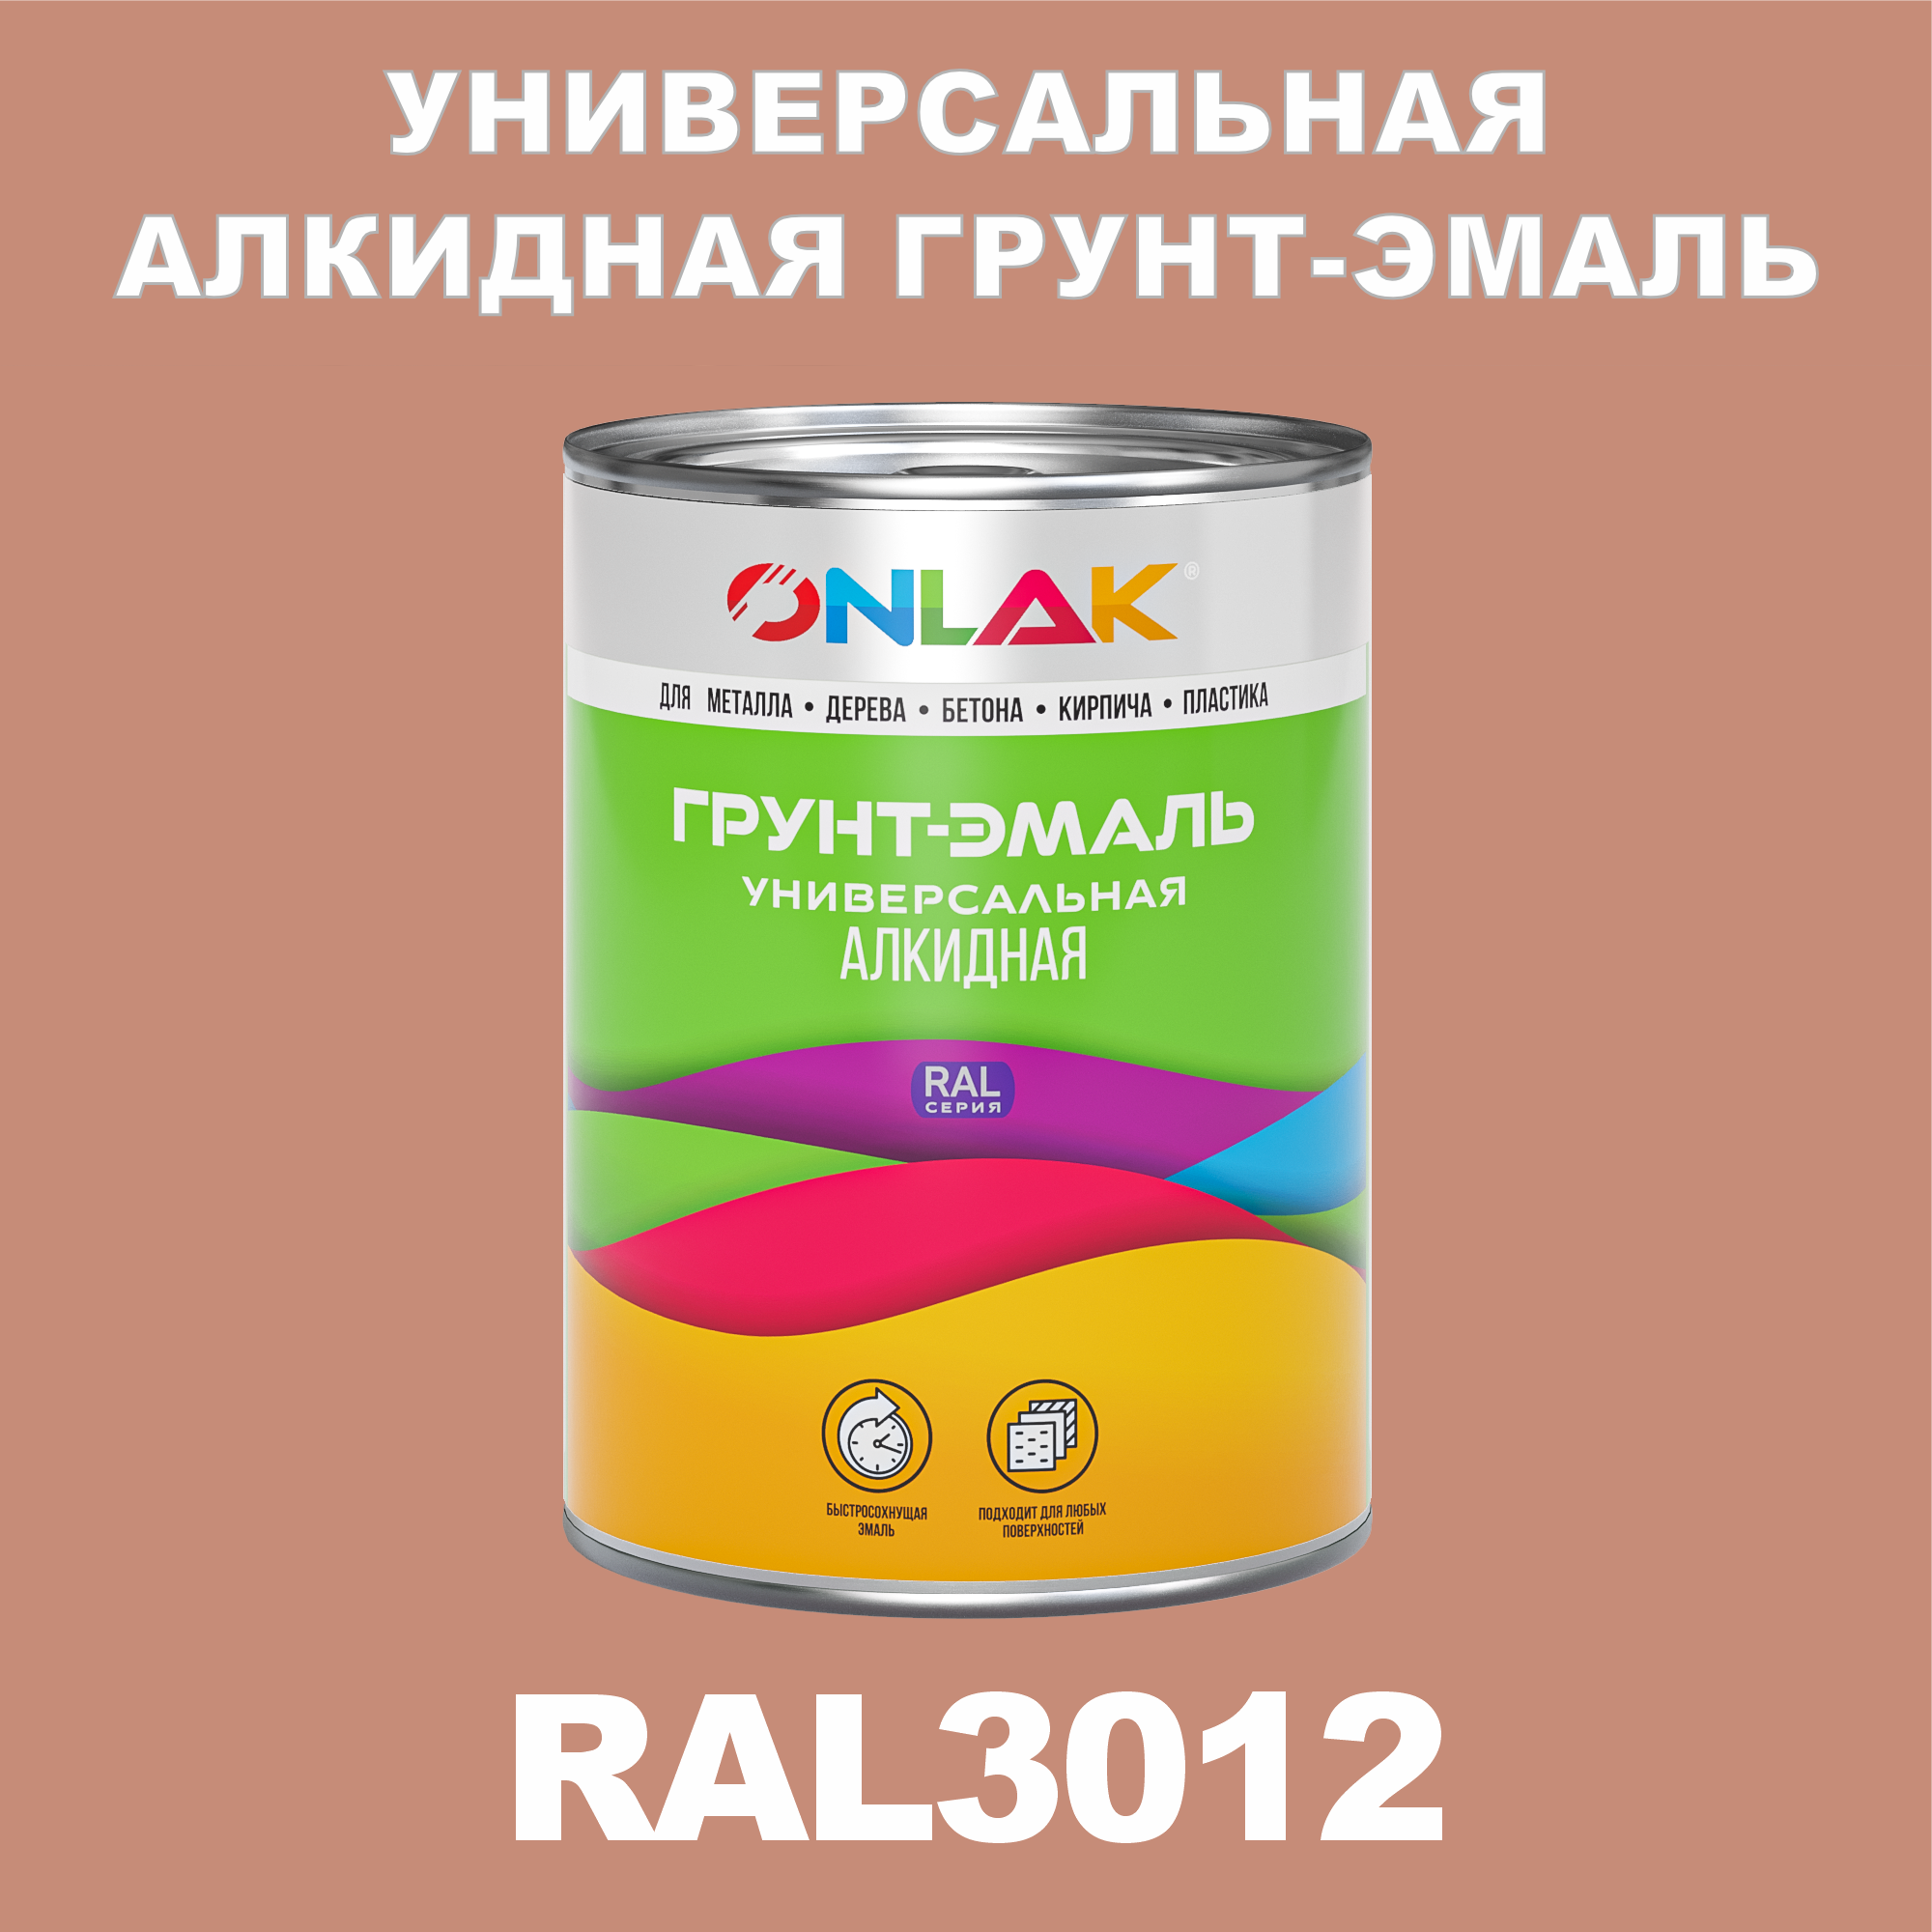 Грунт-эмаль ONLAK 1К RAL3012 антикоррозионная алкидная по металлу по ржавчине 1 кг